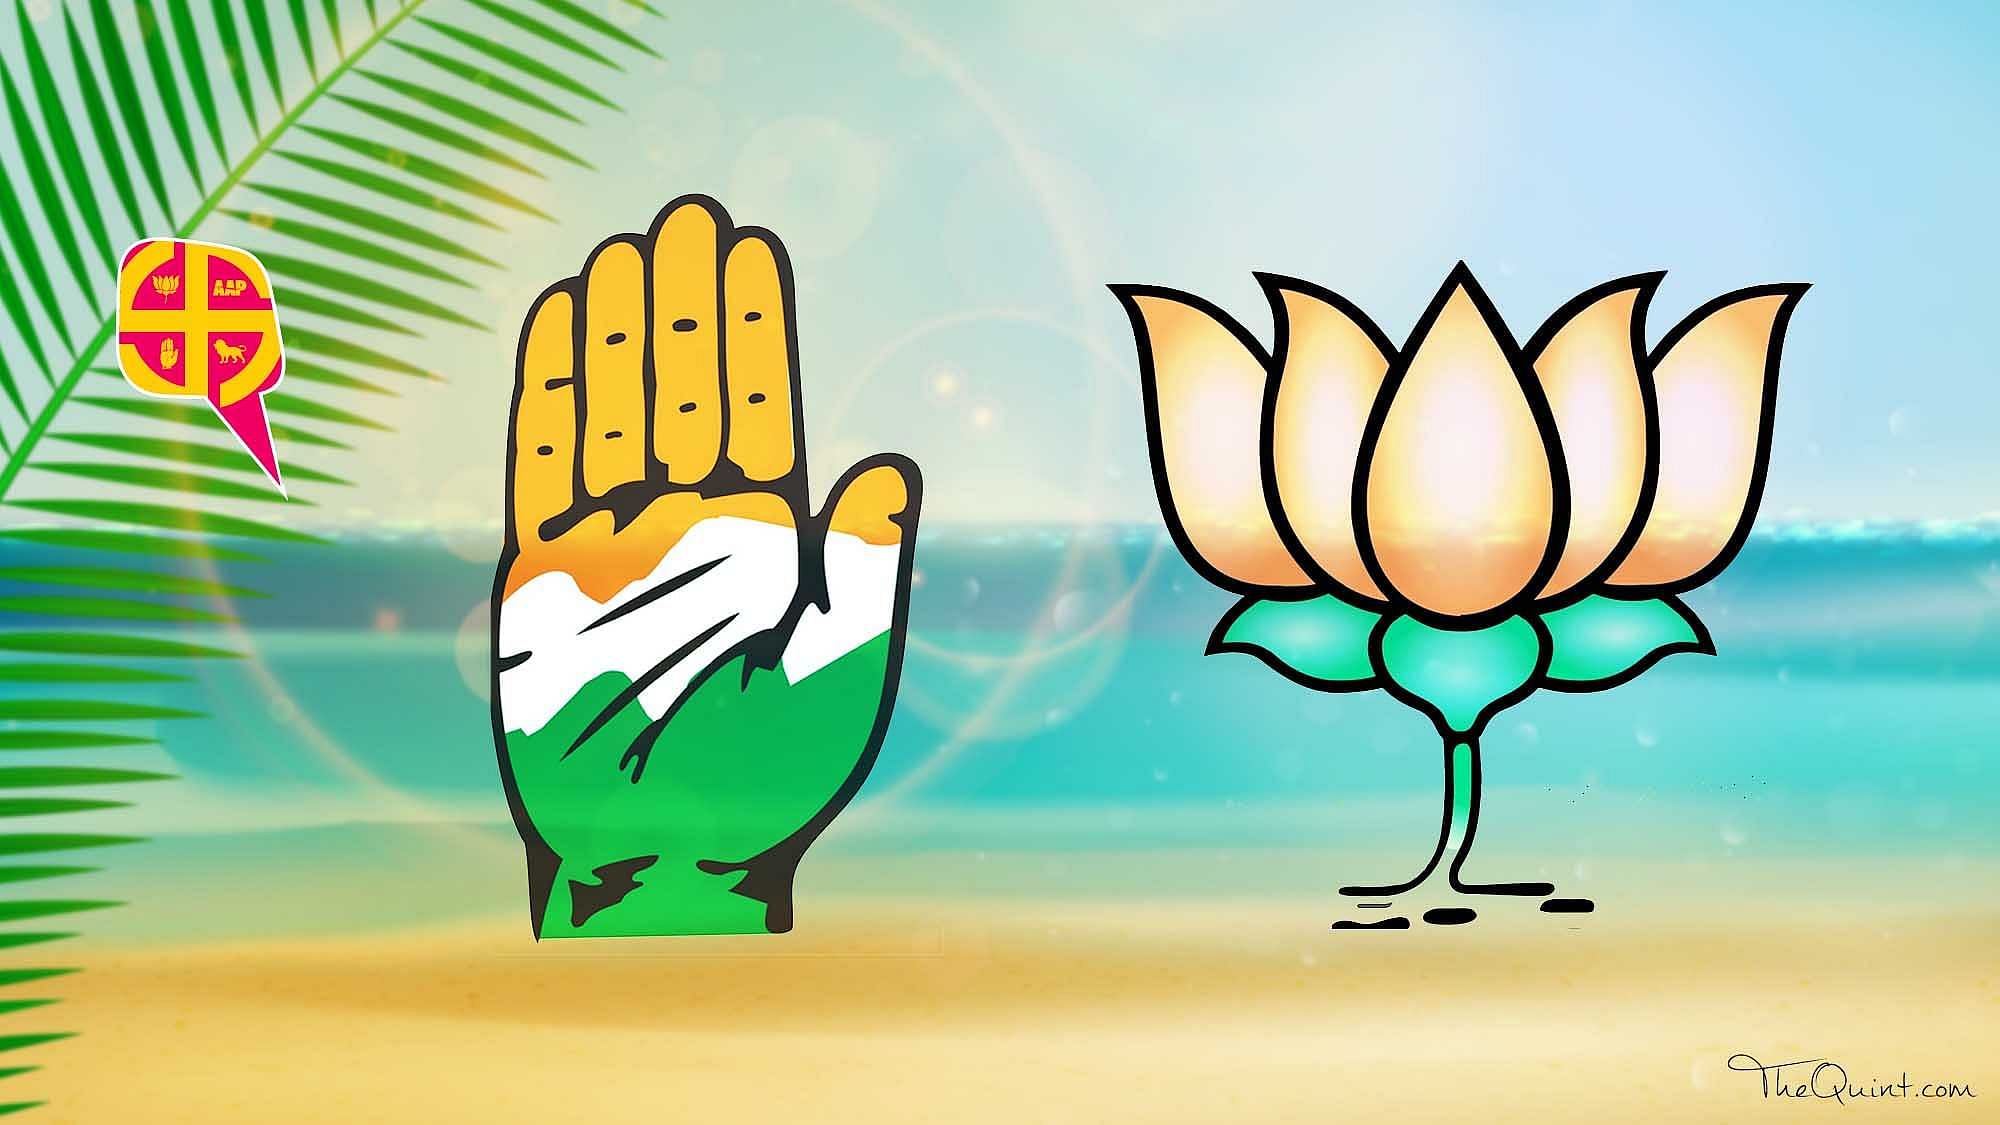 <div class="paragraphs"><p>गोवा चुनाव: BJP और कांग्रेस की विश्वसनीयता को क्यों खतरा?</p></div>